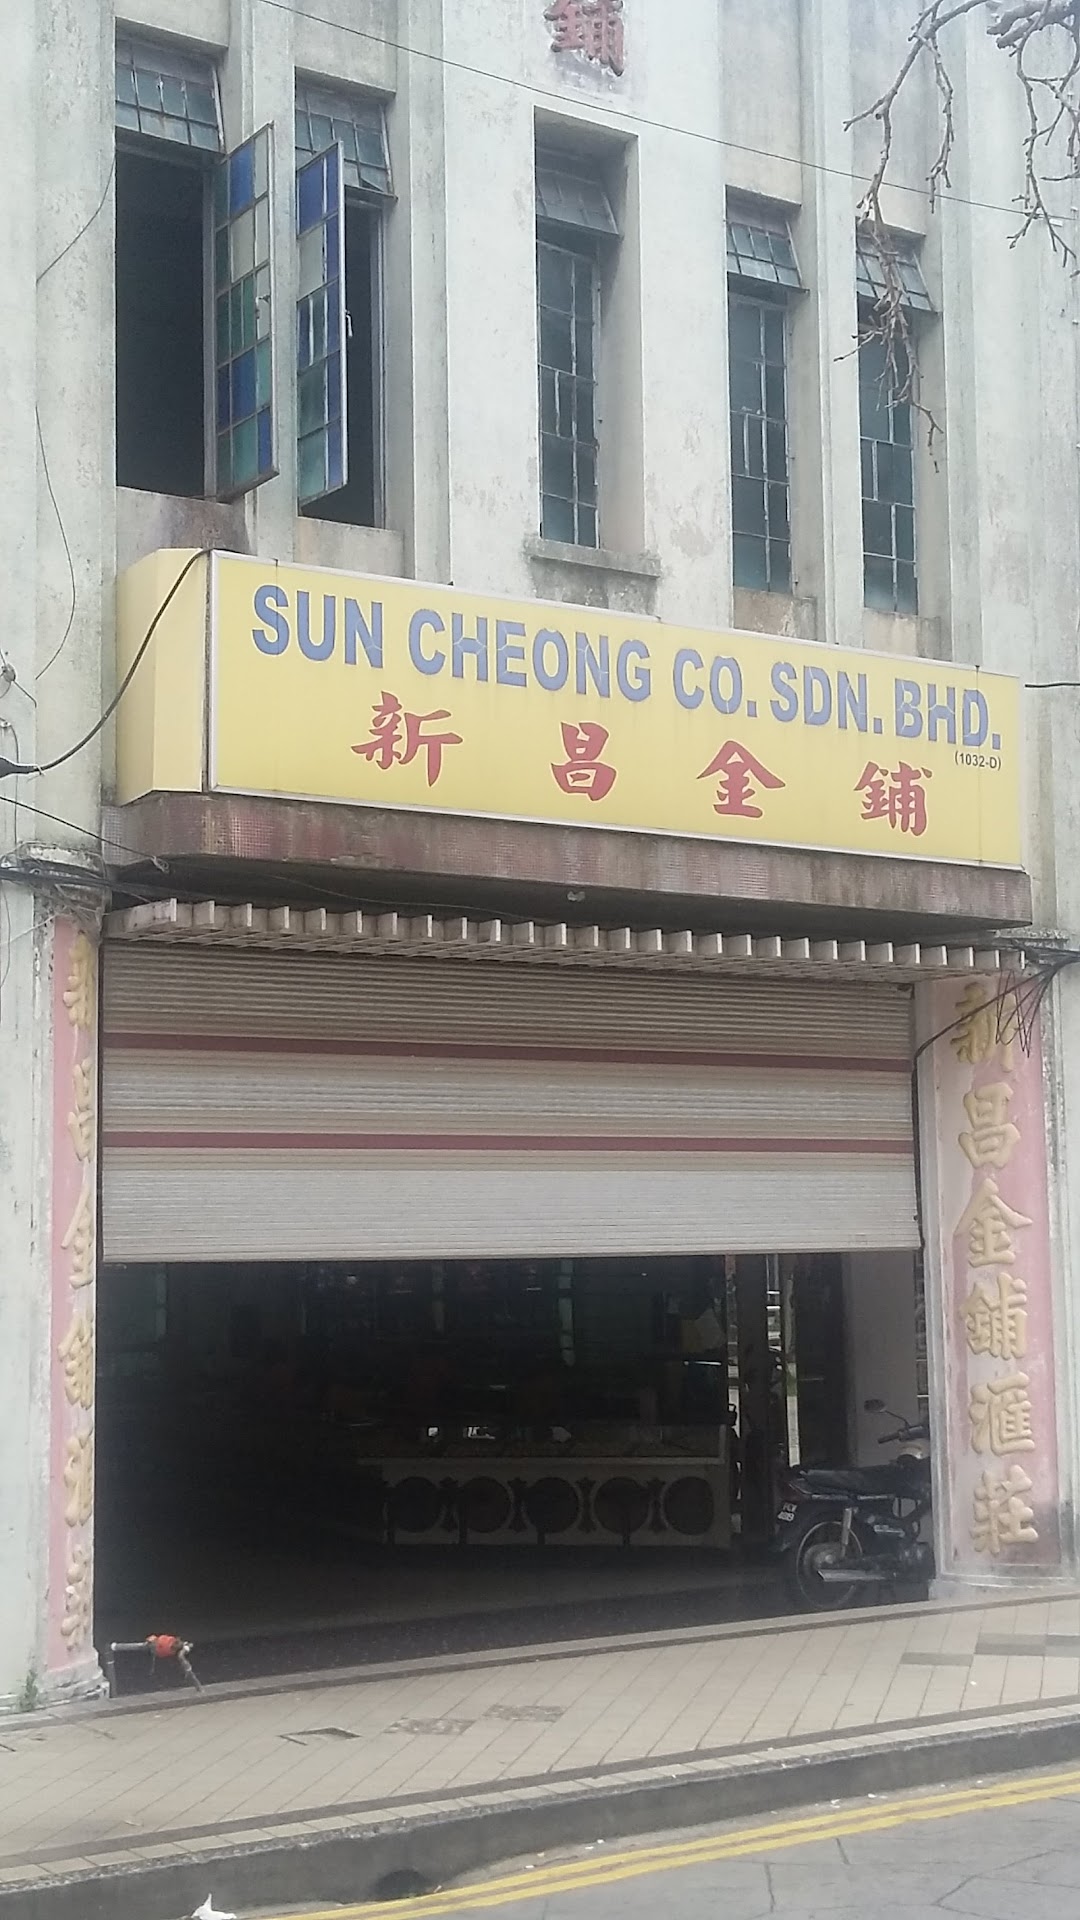 Sun Cheong CO. Sdn. Bhd